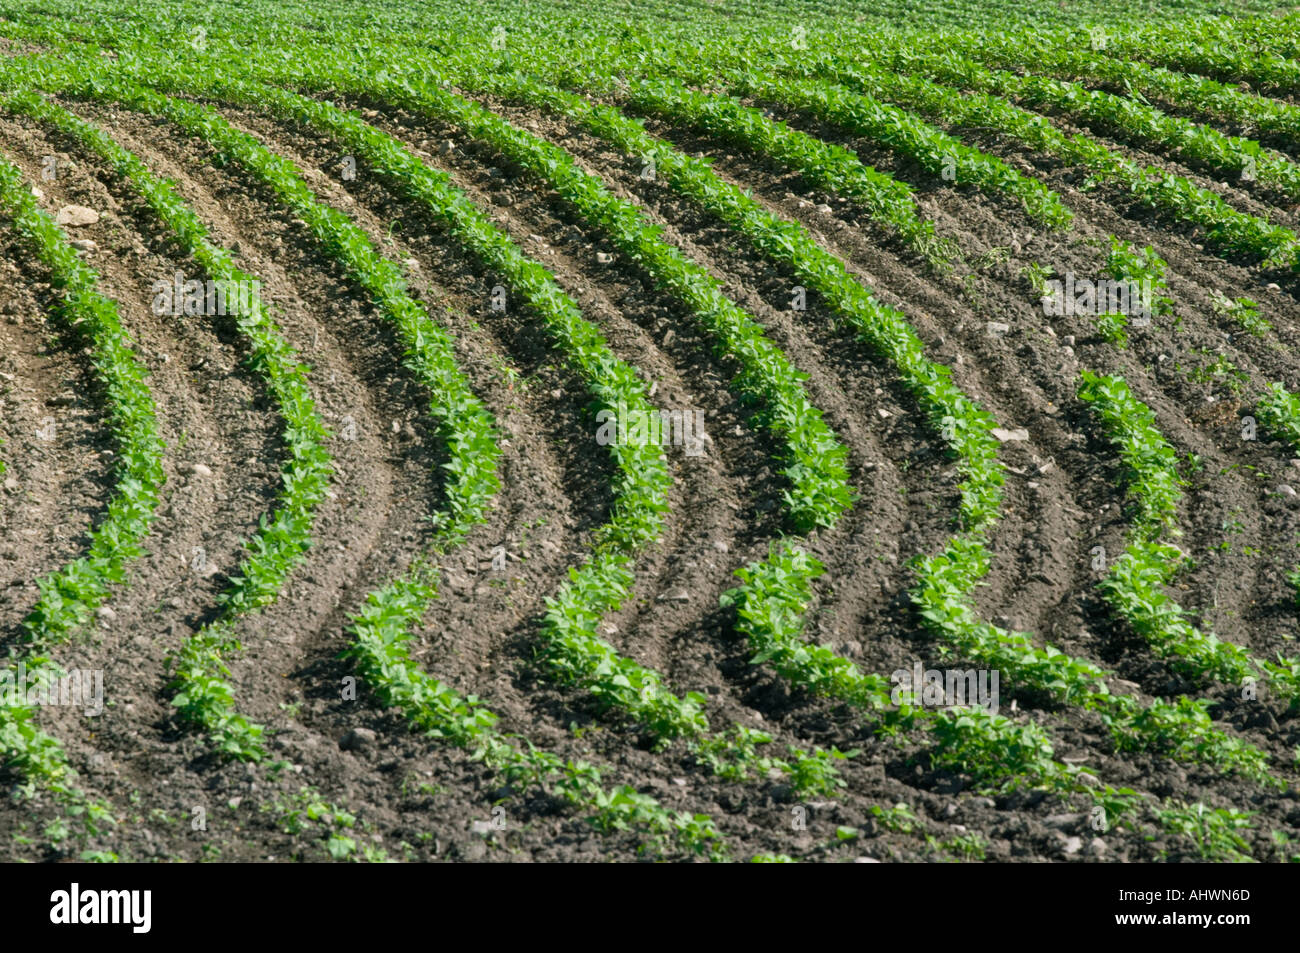 Les lignes courbes de croissance des cultures dans la région de farm field Banque D'Images